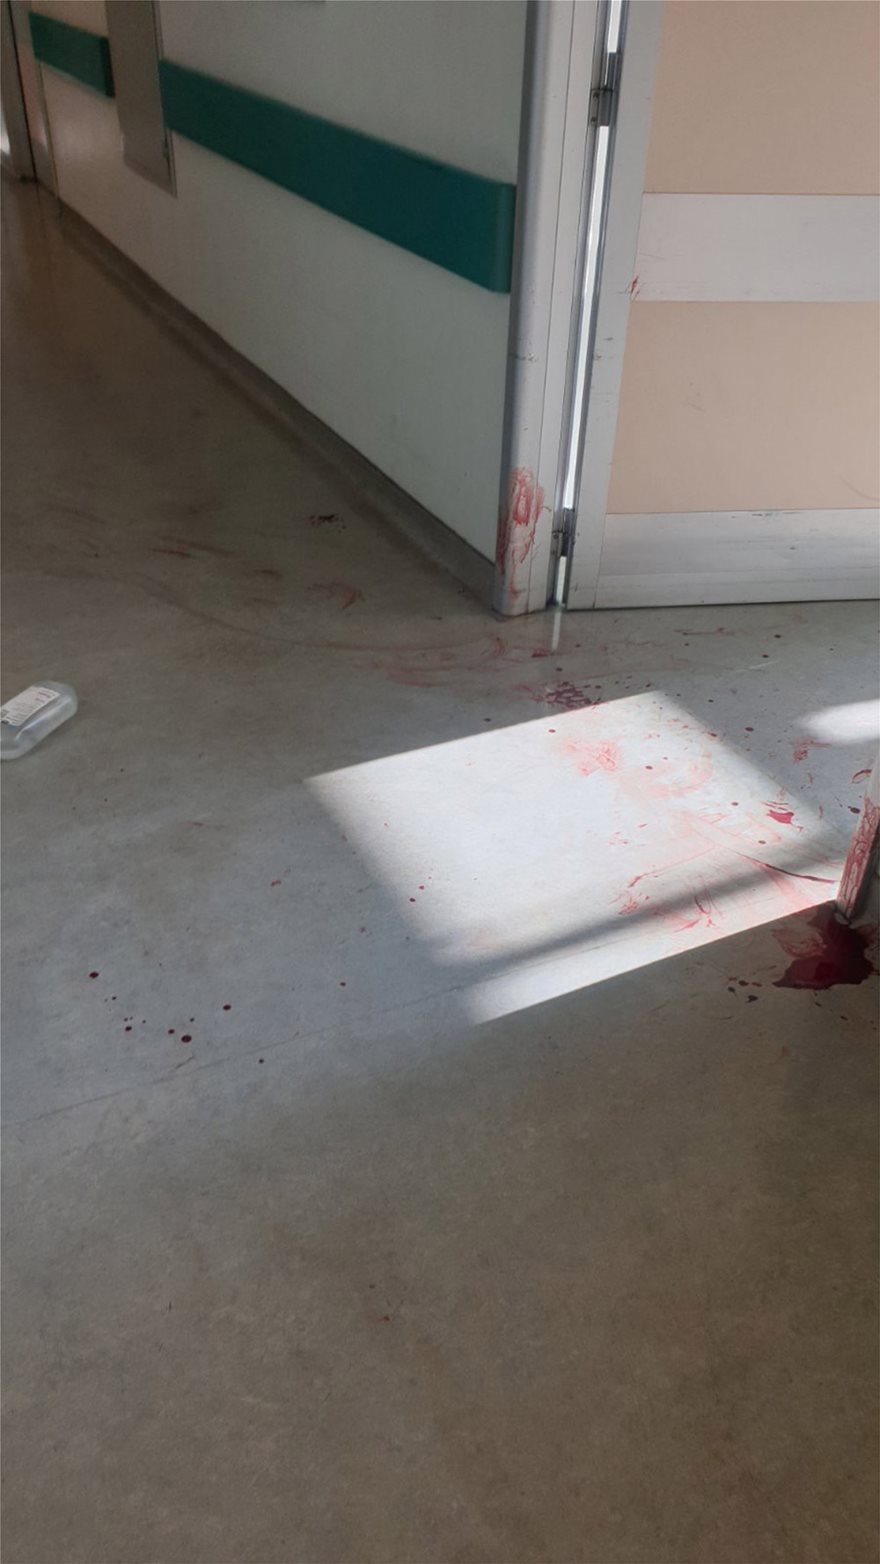 Νοσοκομείο Αττικόν: Ασθενής μαχαίρωσε νοσηλεύτρια και αυτοκτόνησε - Φωτογραφία 2